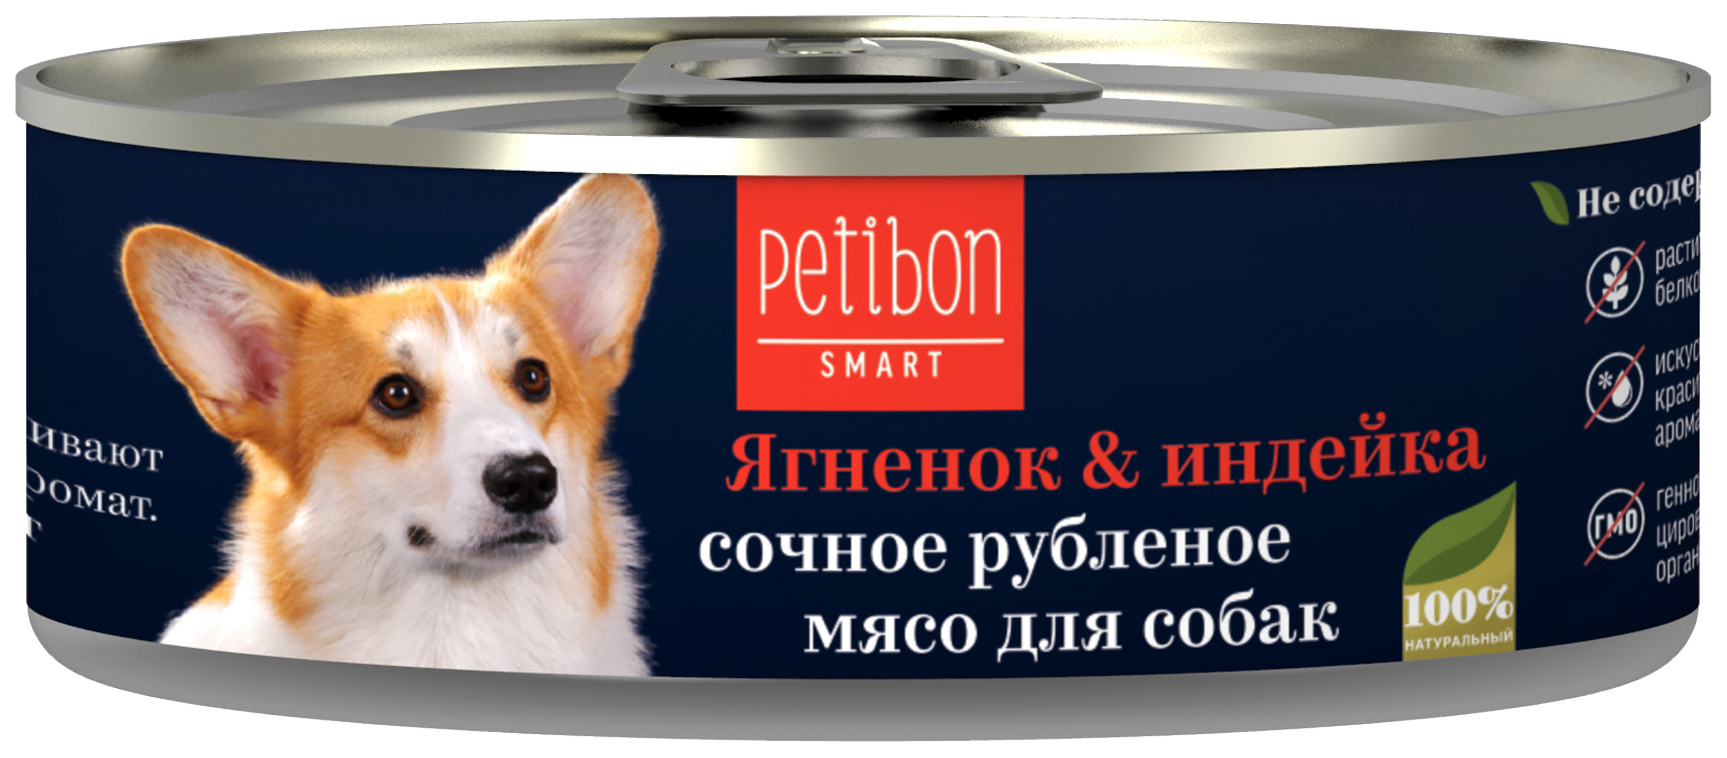 Консервы для собак Petibon Smart, ягненок, индейка, 24шт по 100г